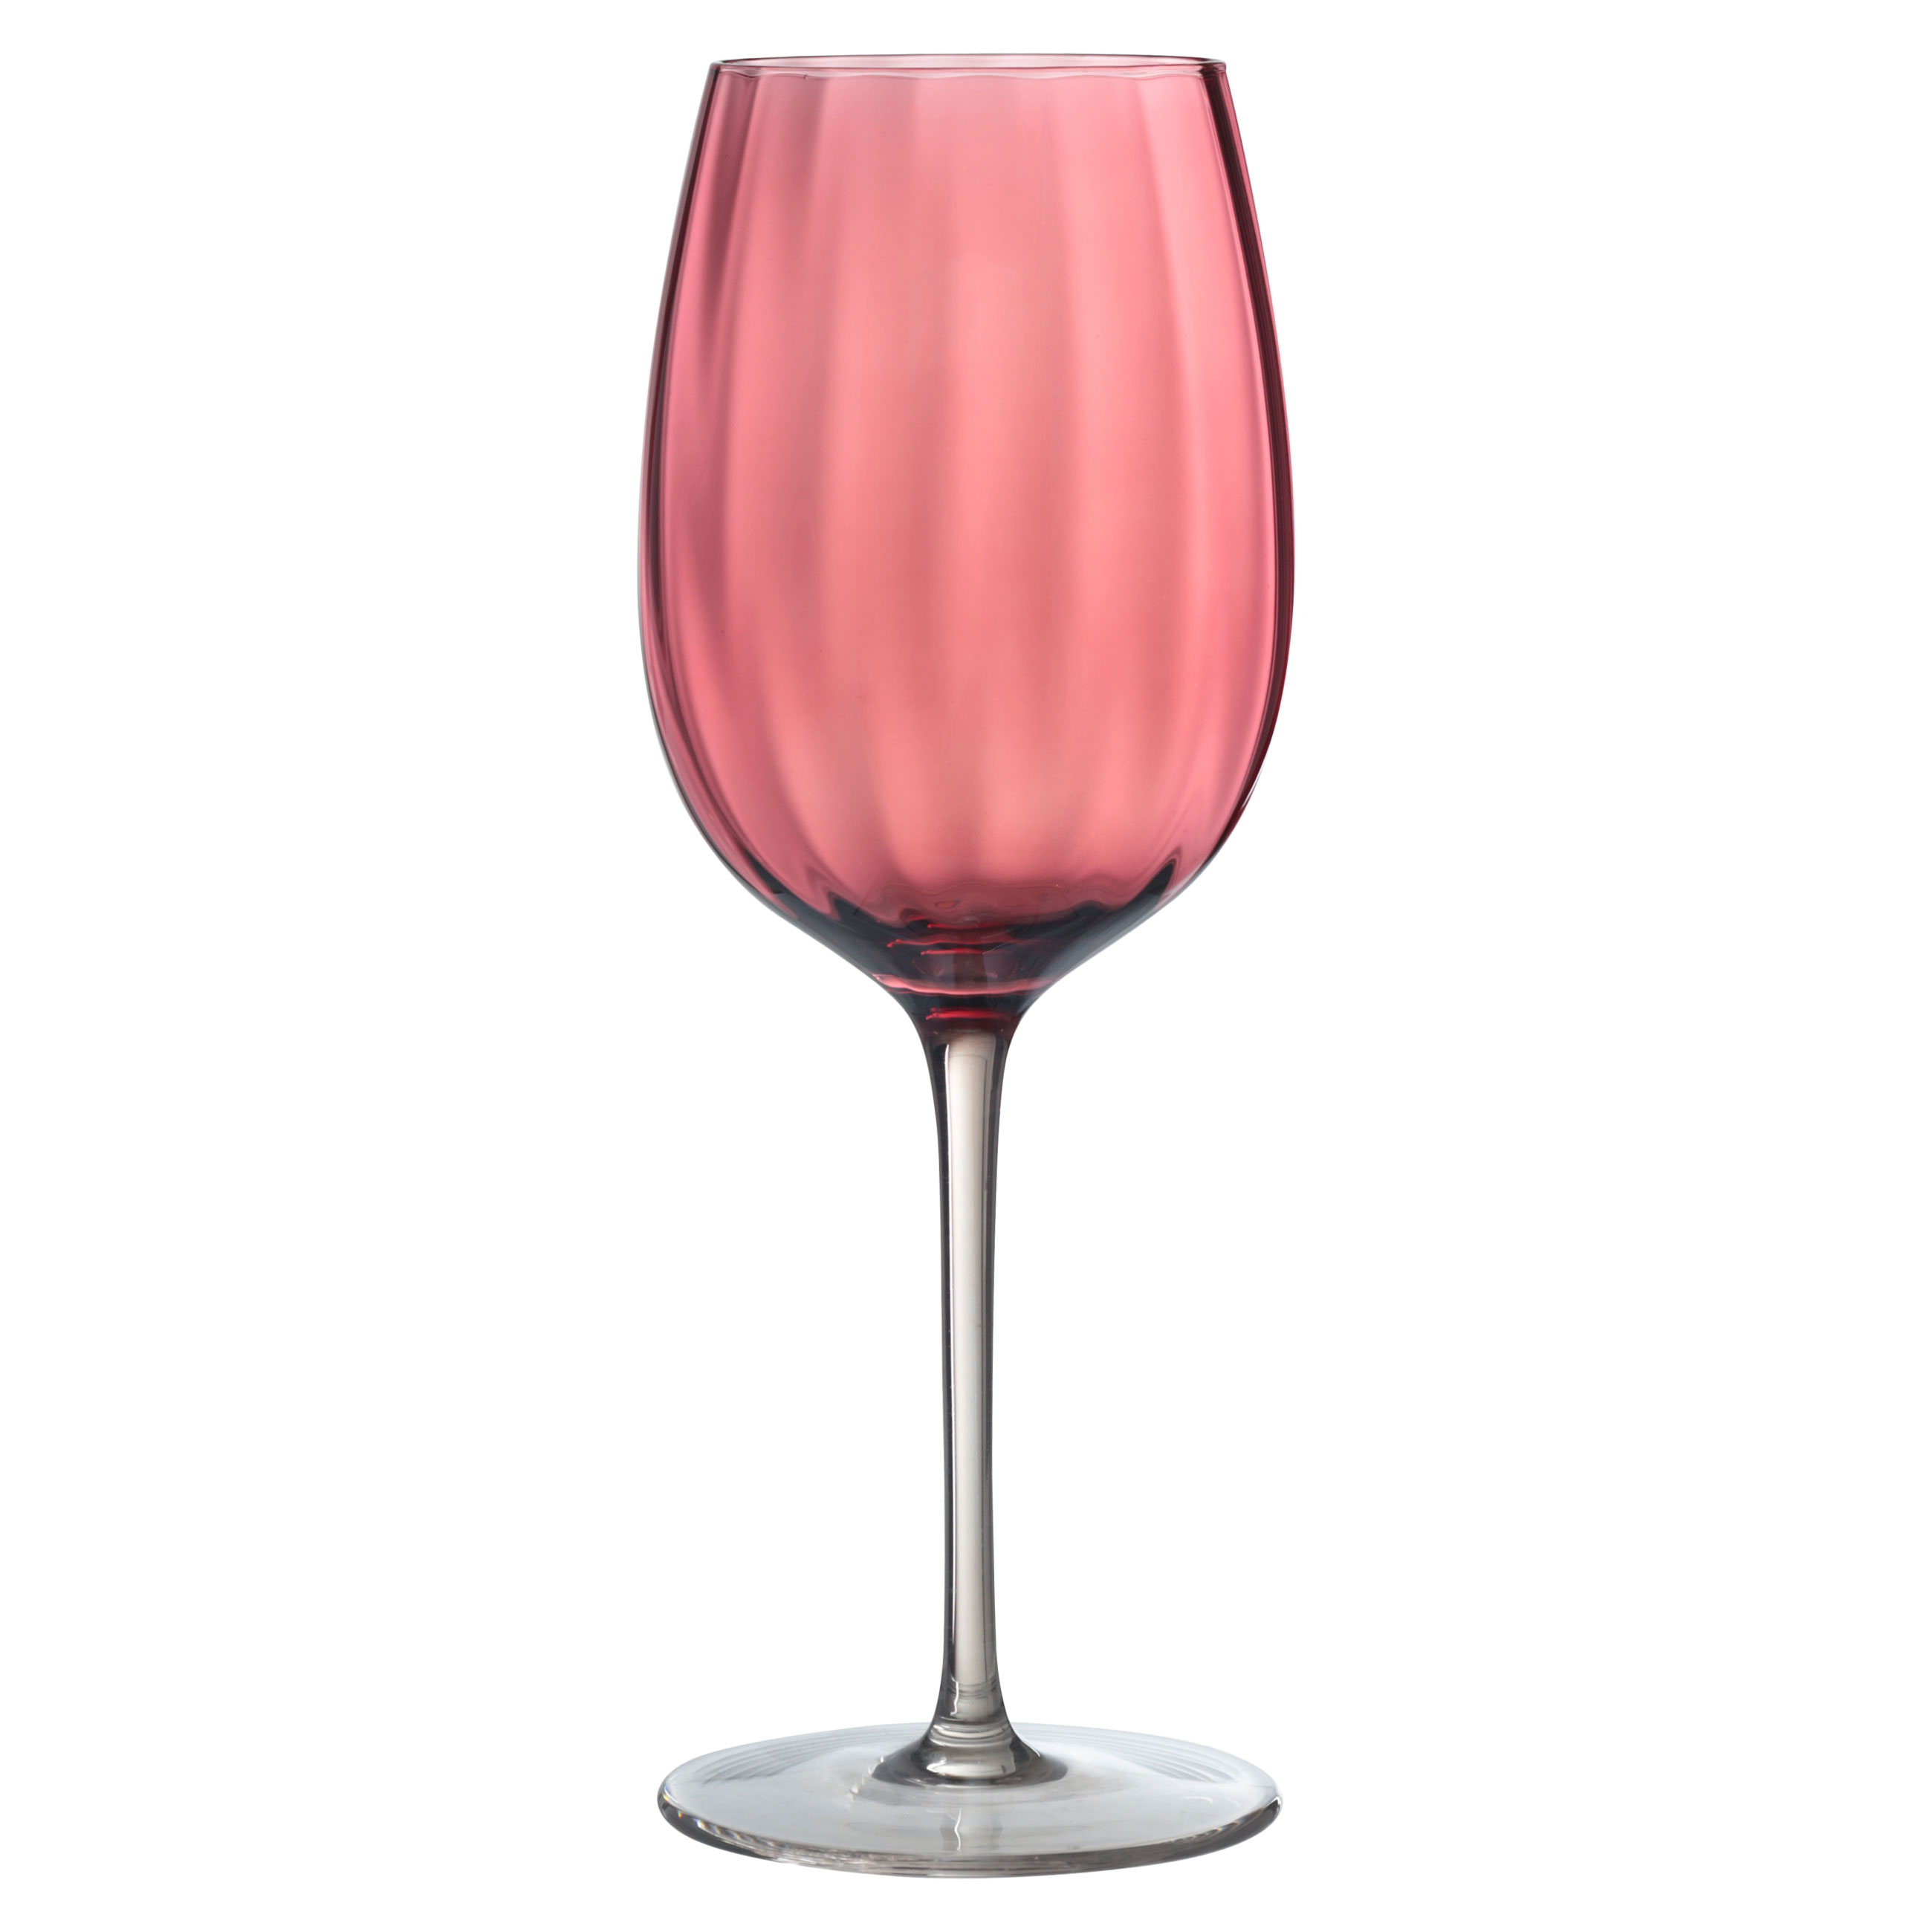 Бокал для вина, 470 мл, 2 шт, стекло, бордовый, Filo R color